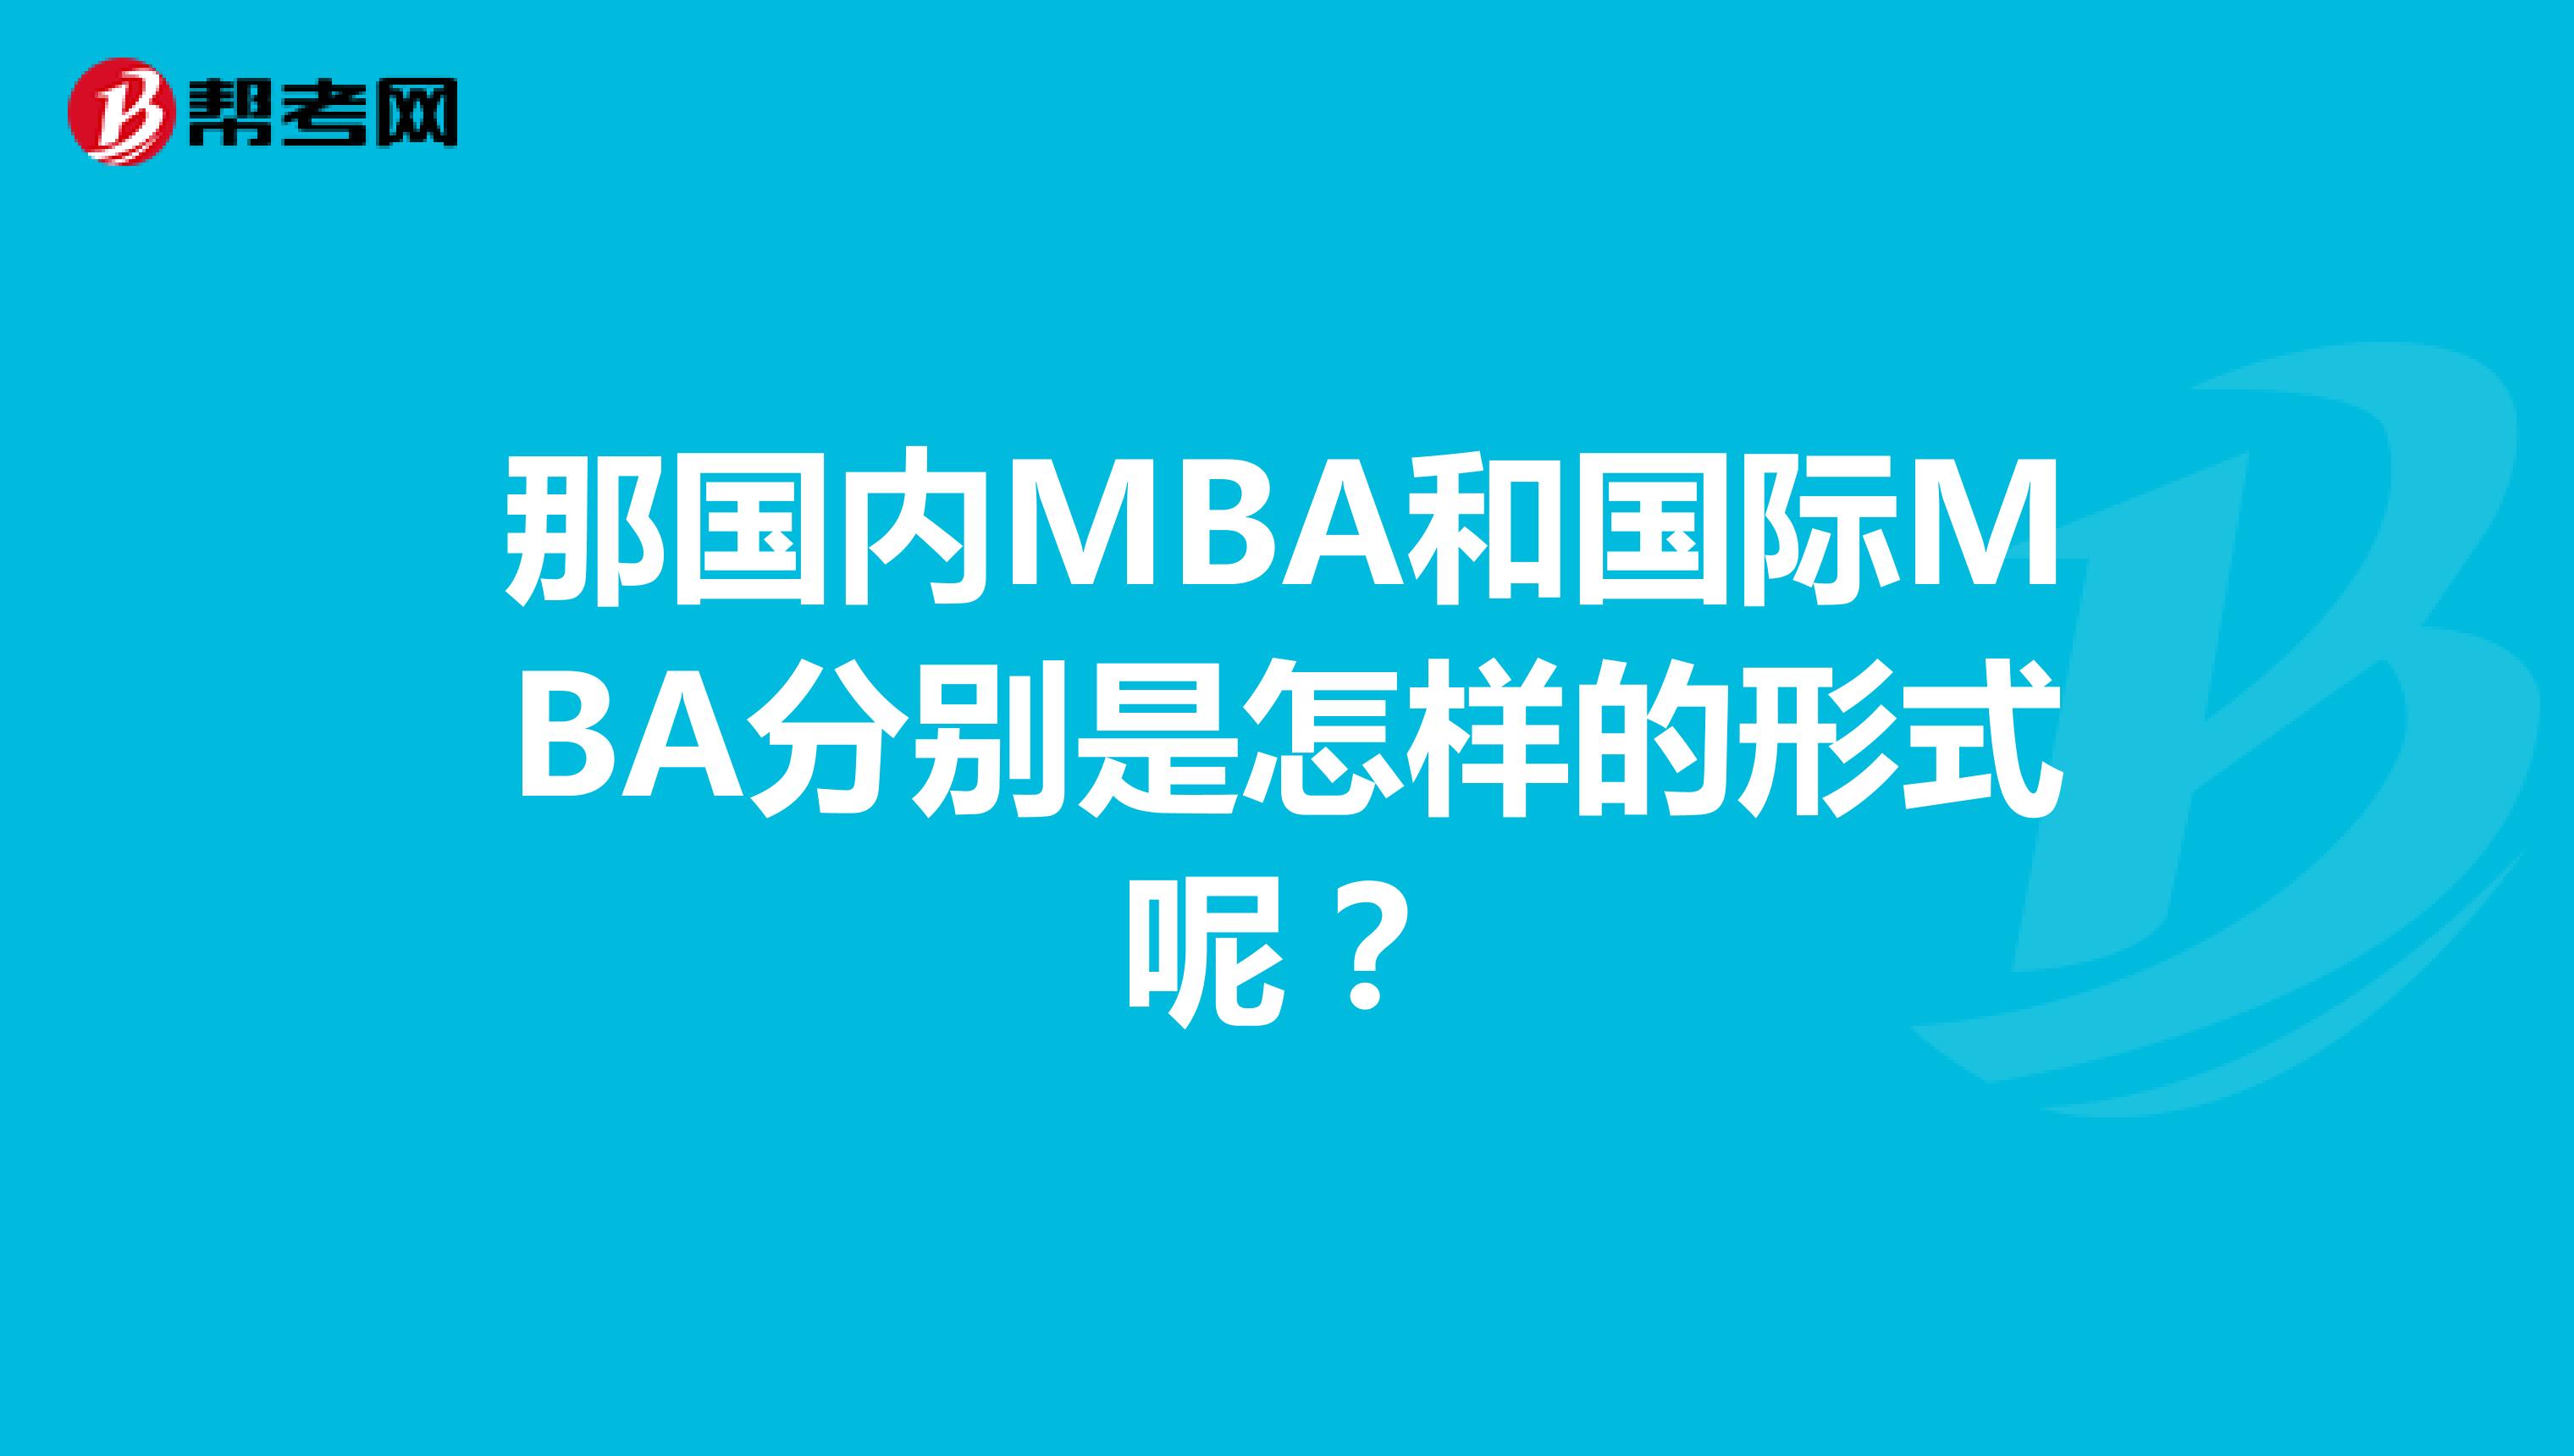 那国内MBA和国际MBA分别是怎样的形式呢？